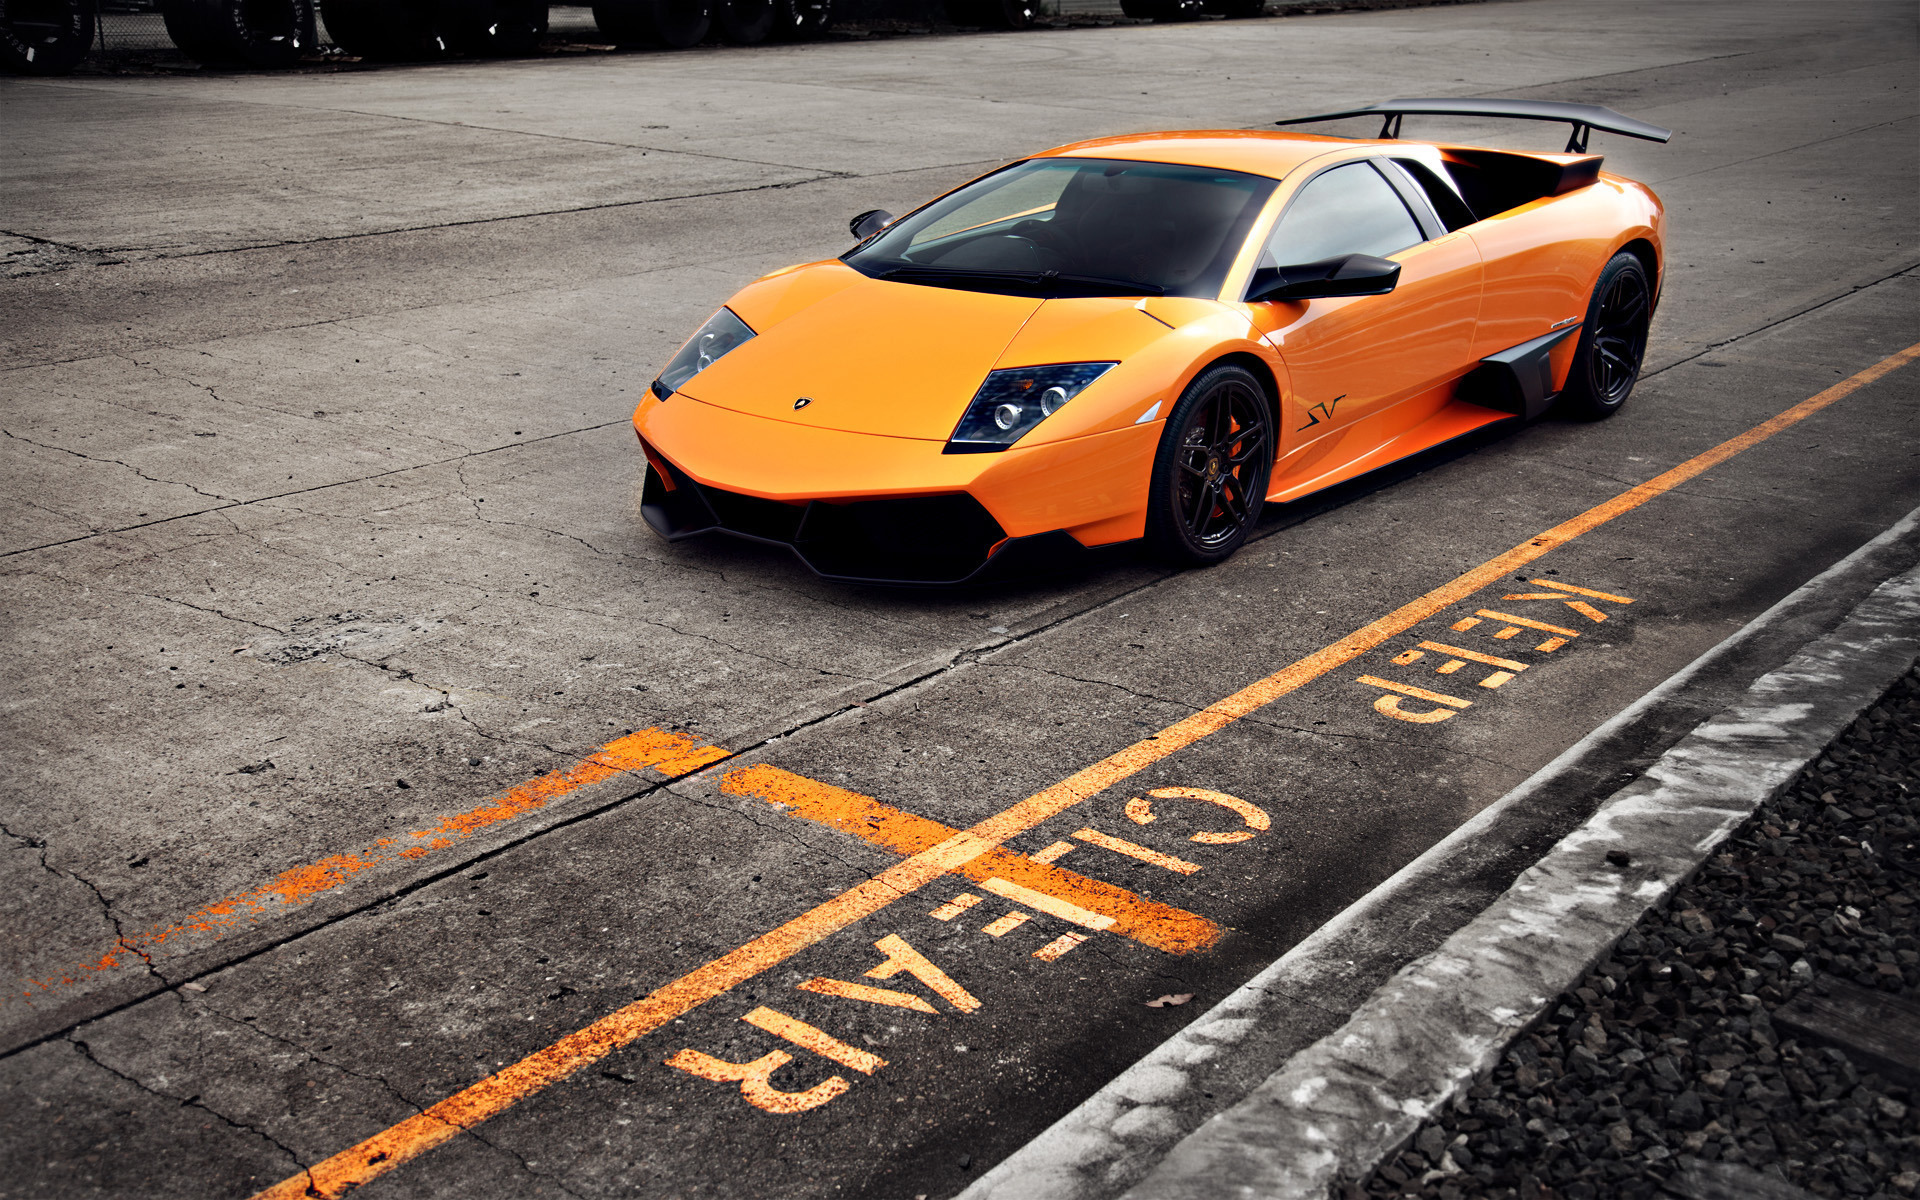 Скачать картинку Ламборджини (Lamborghini), Транспорт, Машины в телефон бесплатно.